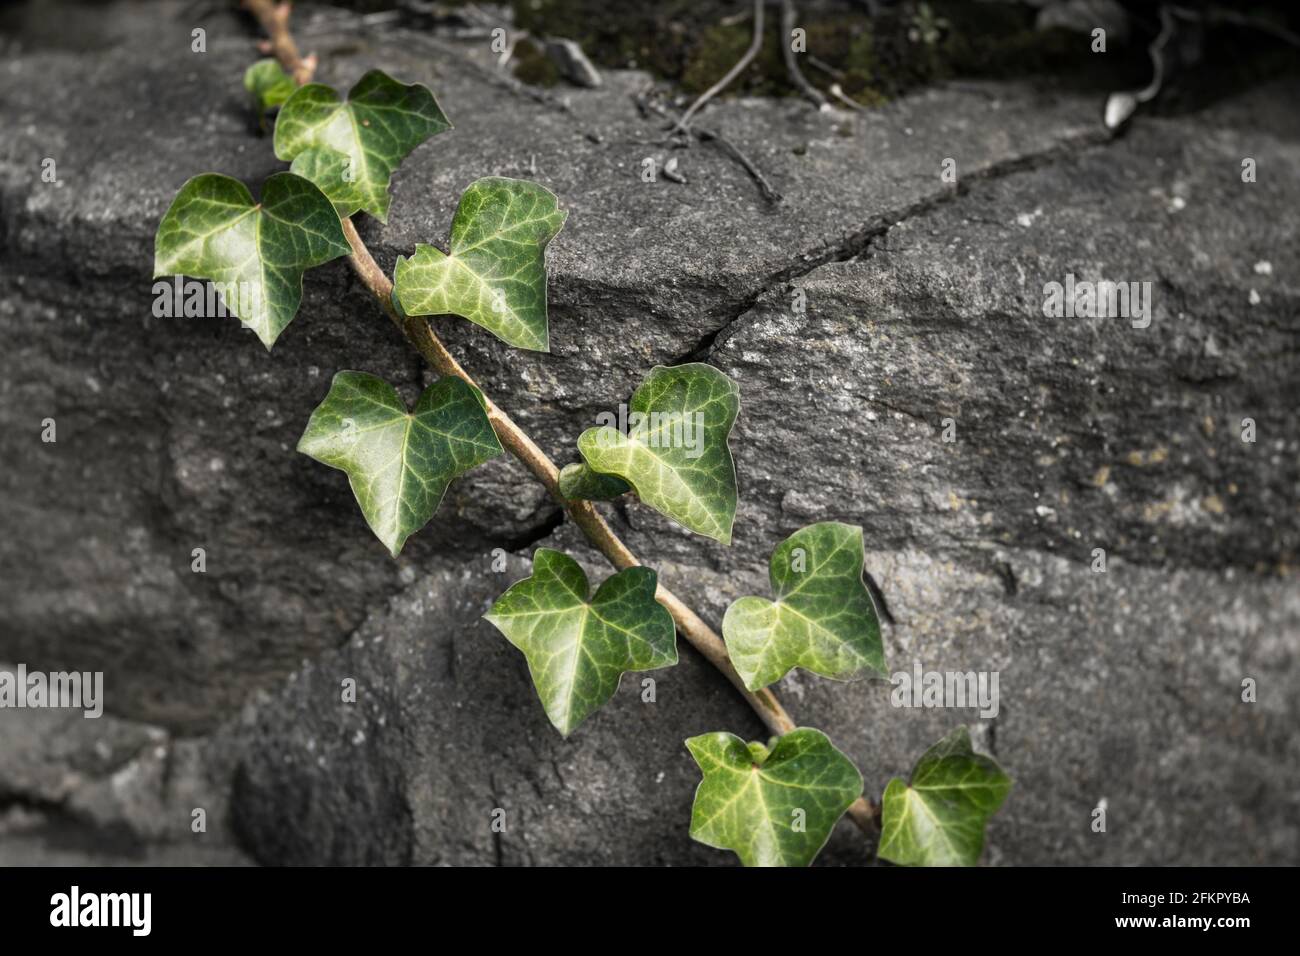 WA19516-00...WASHIGTON - Ivy grandit sur un mur de soutènement de roche. Banque D'Images